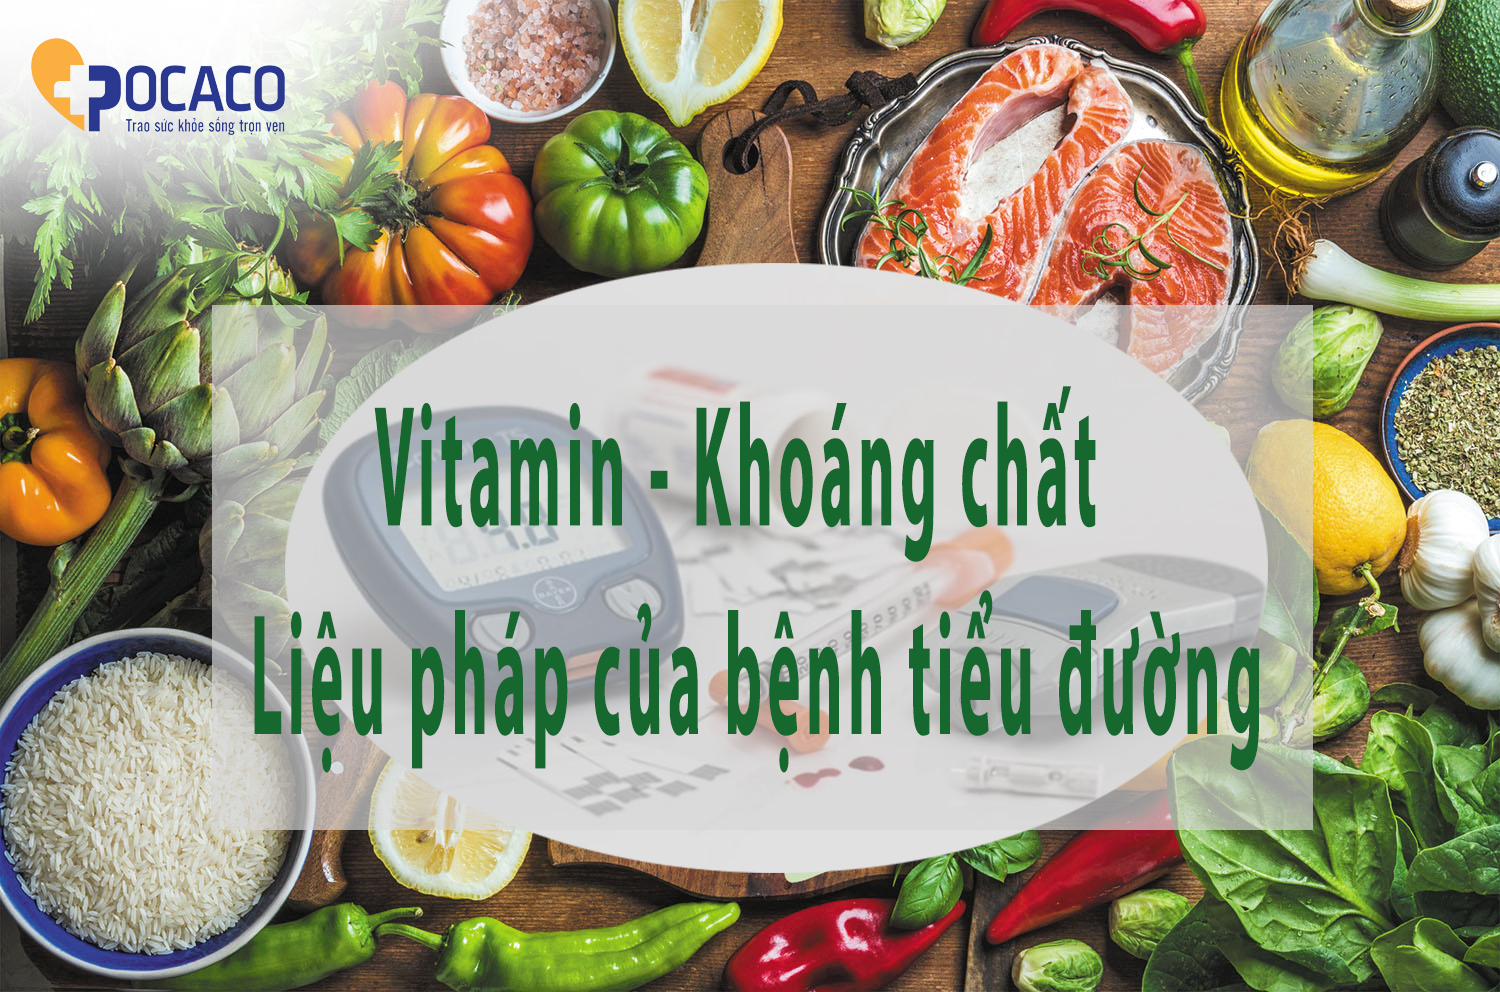 nhung-loai-vitamin-nao-tot-nhat-cho-benh-tieu-duong-?-1